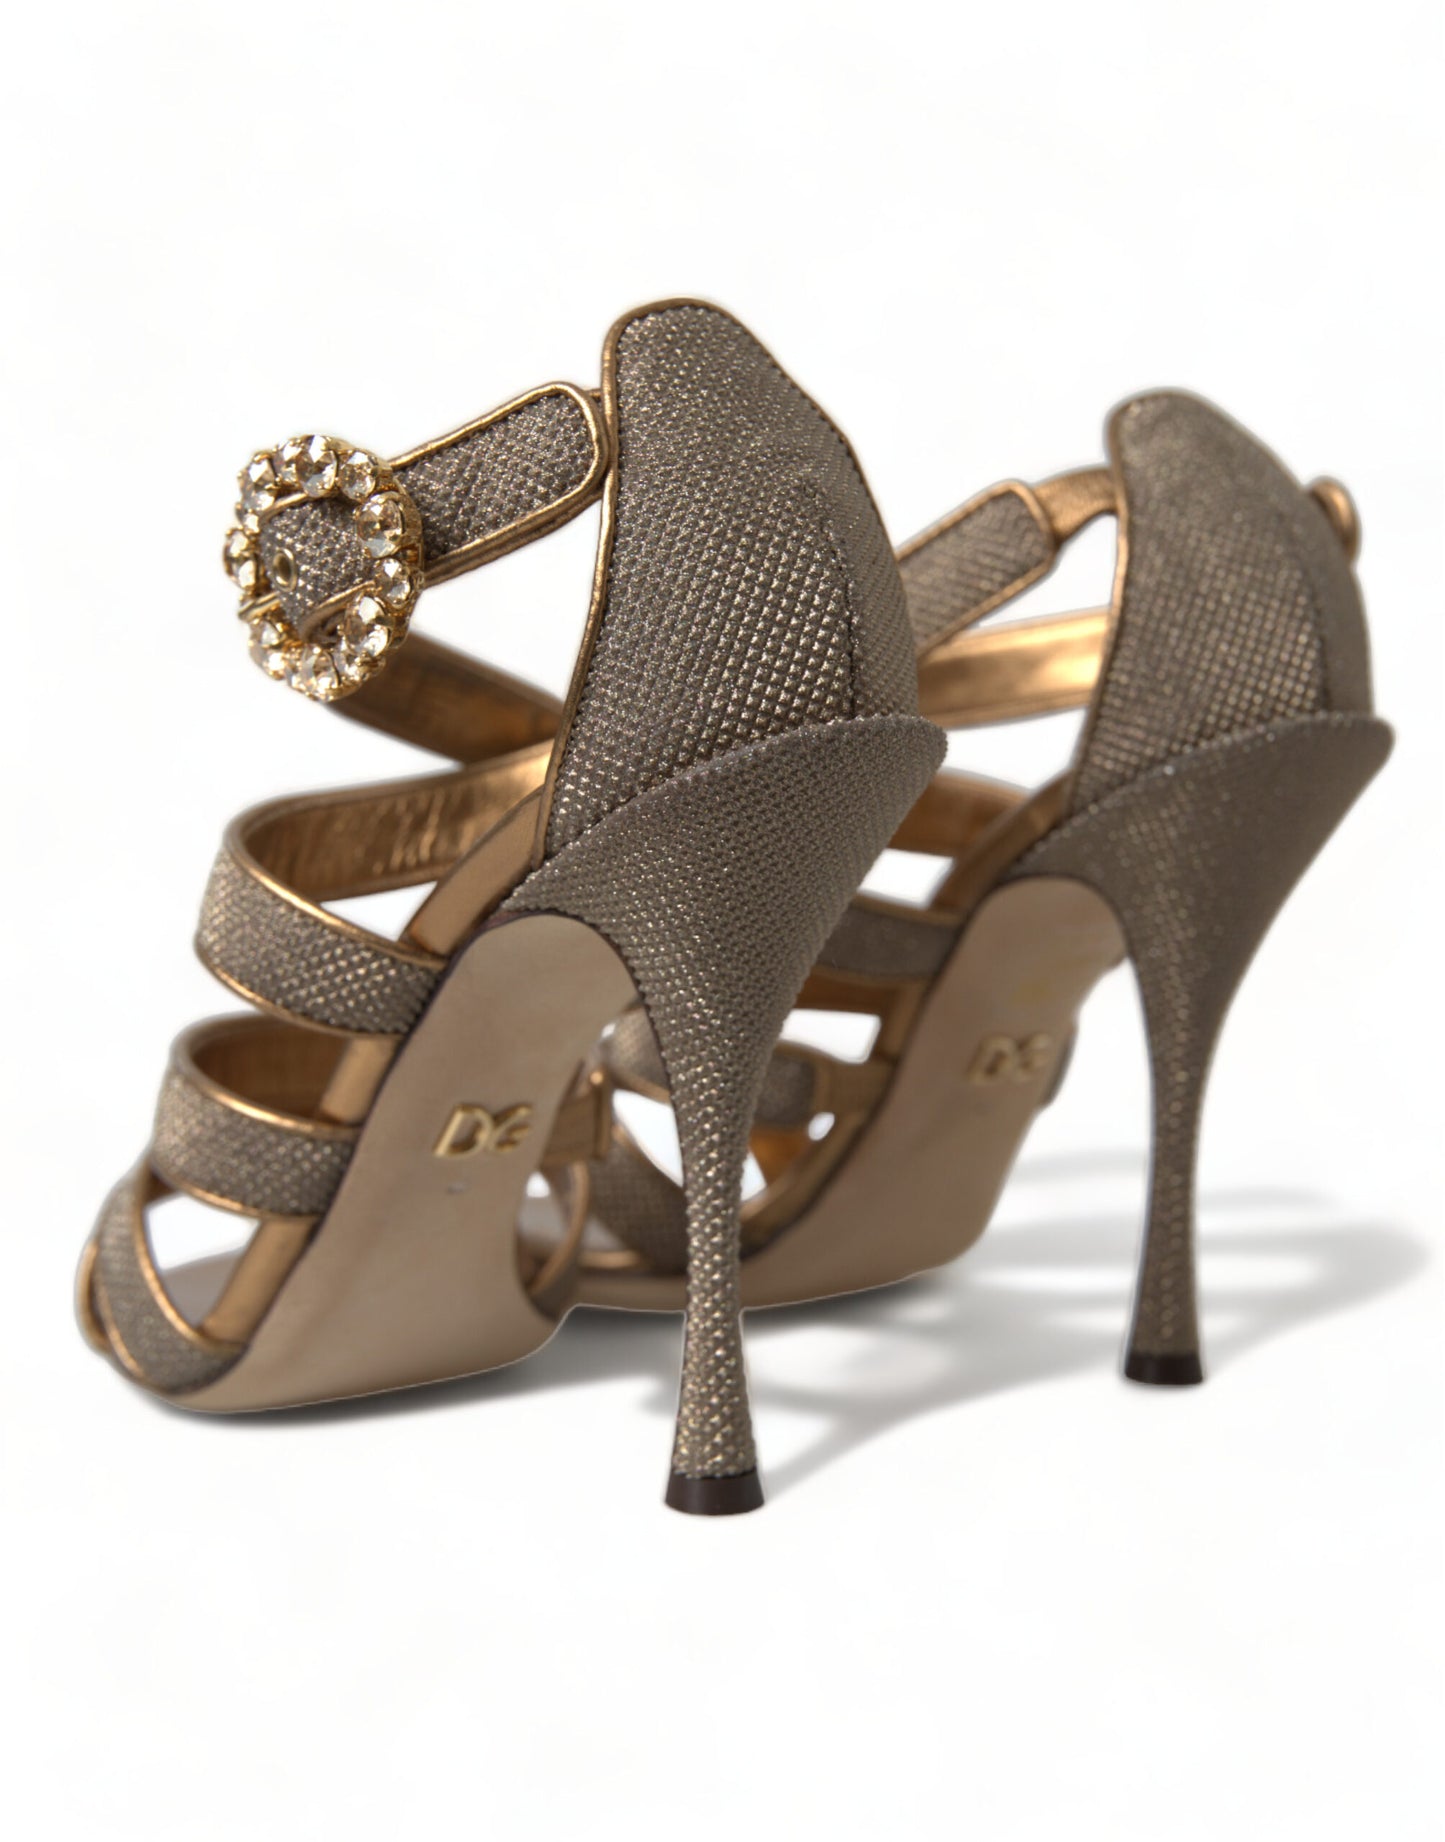 Bronze Crystal Stiletto Heels Sandals